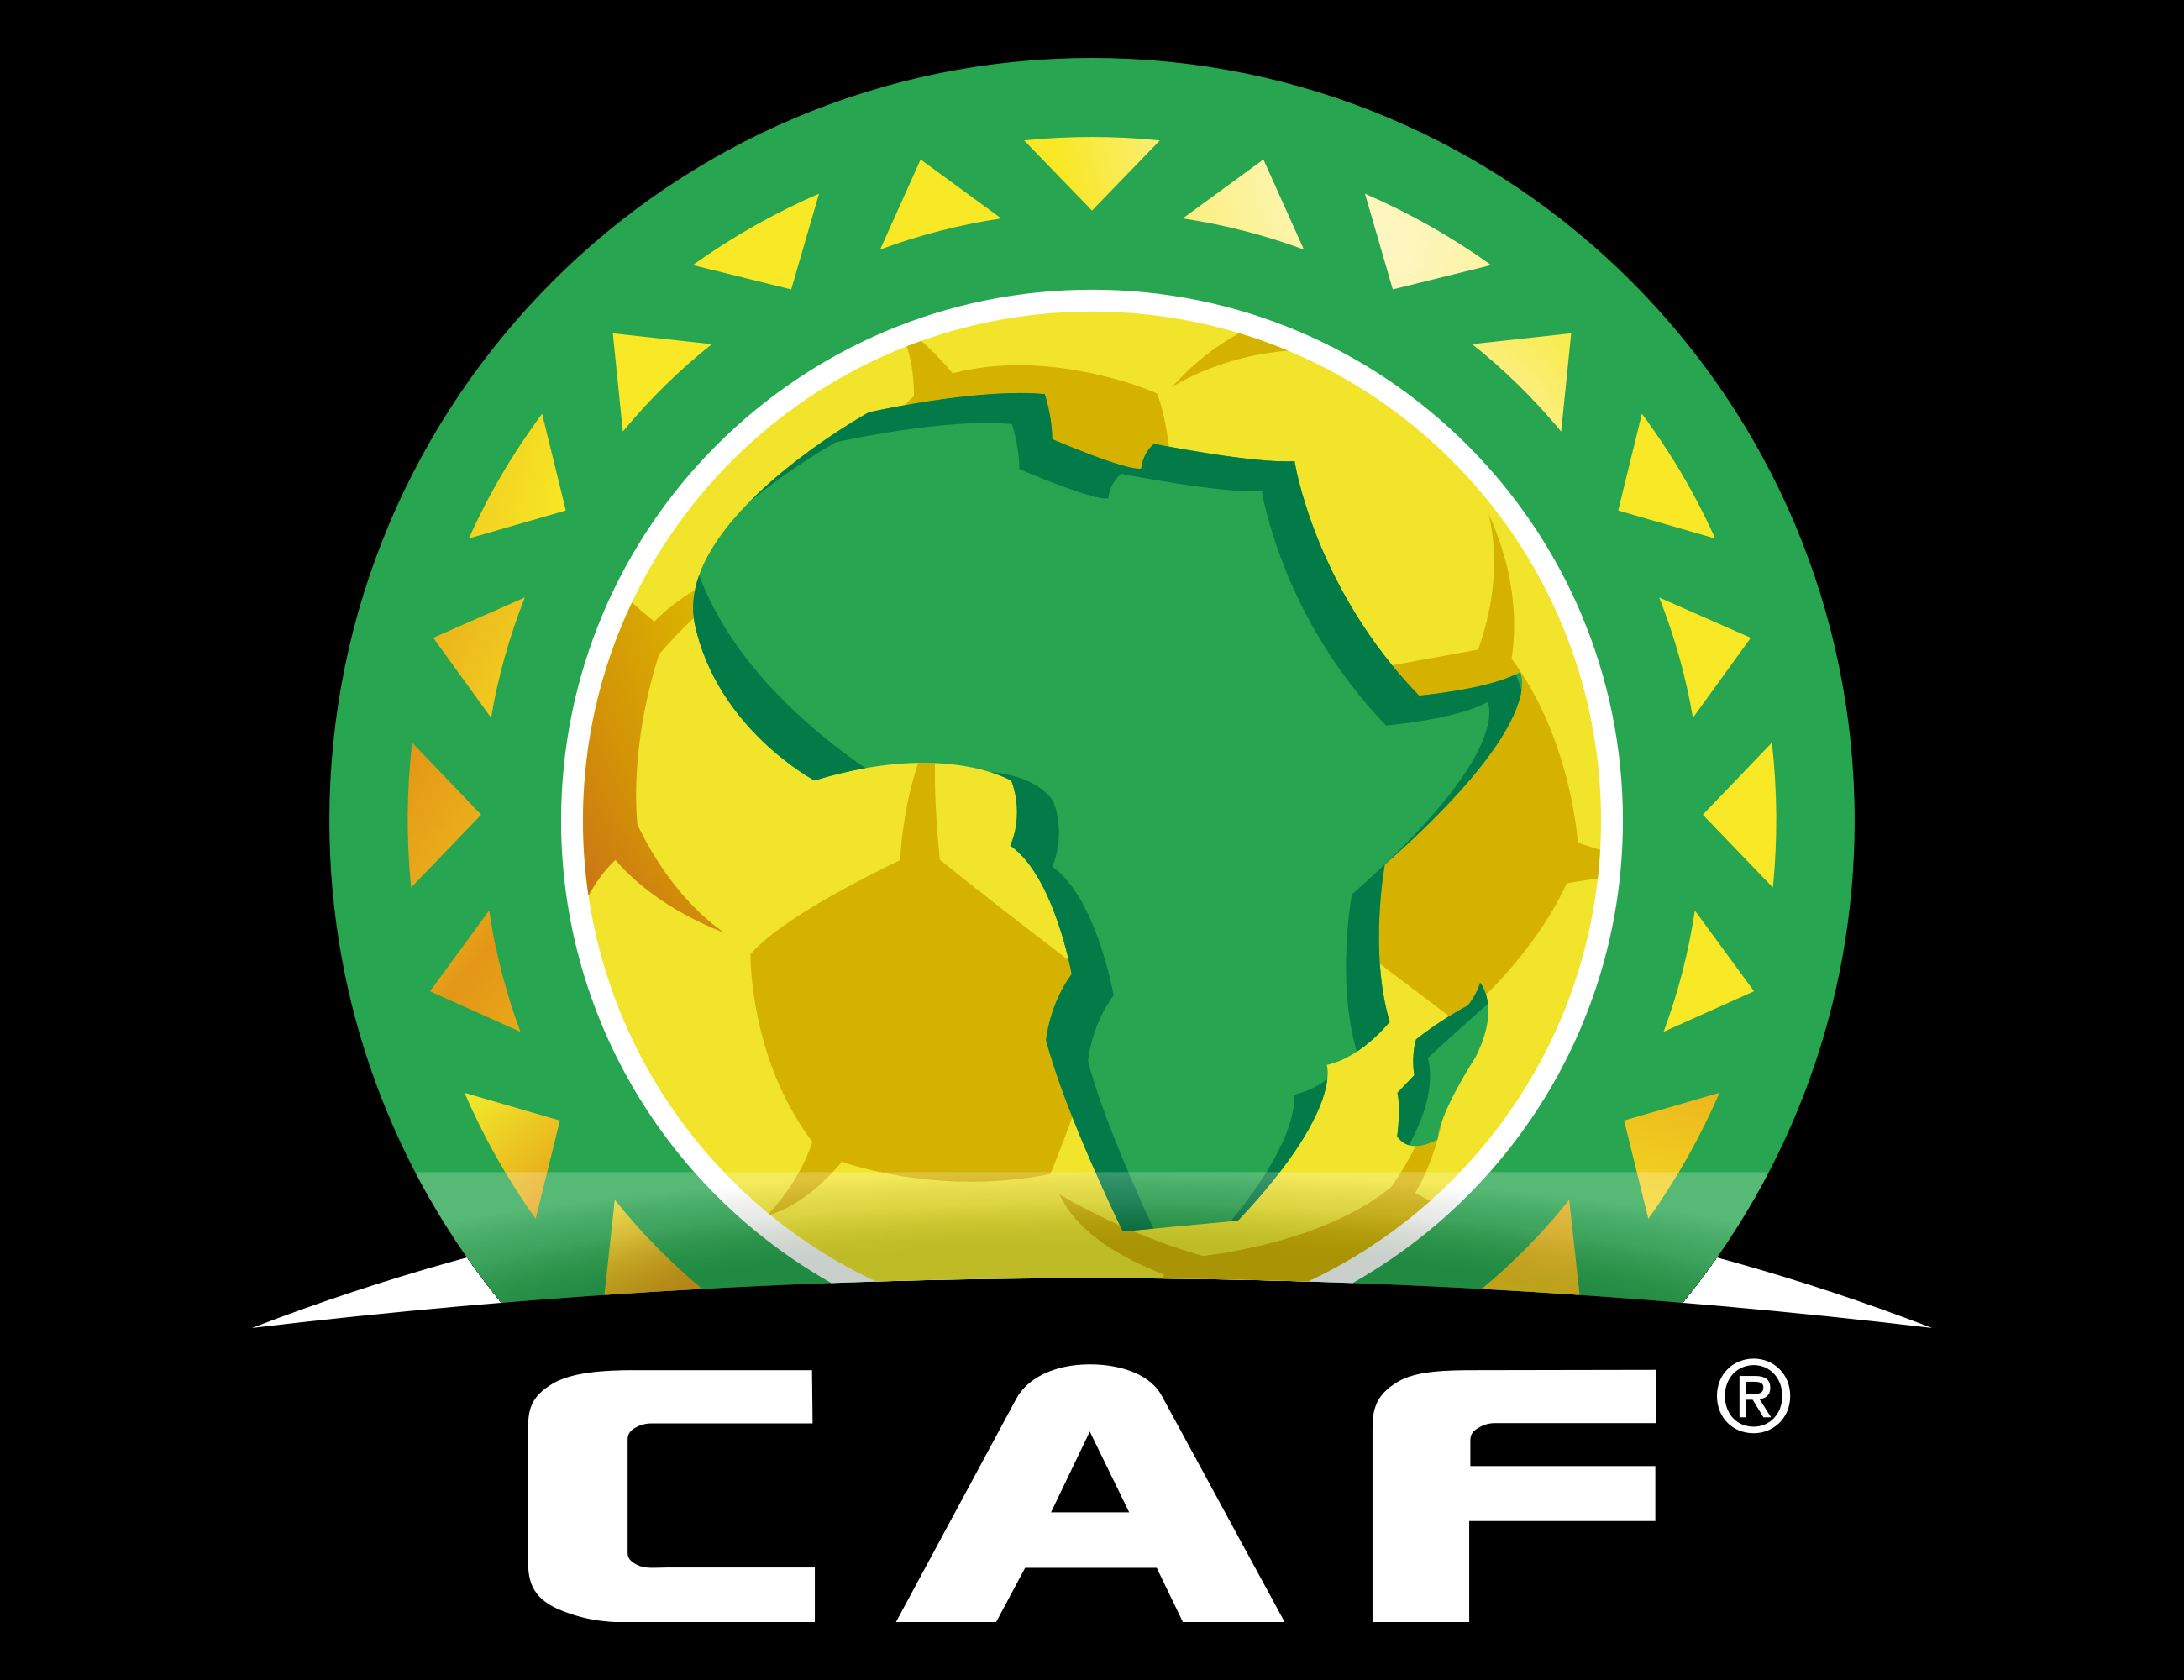  CAF  logo histoire signification et volution symbole